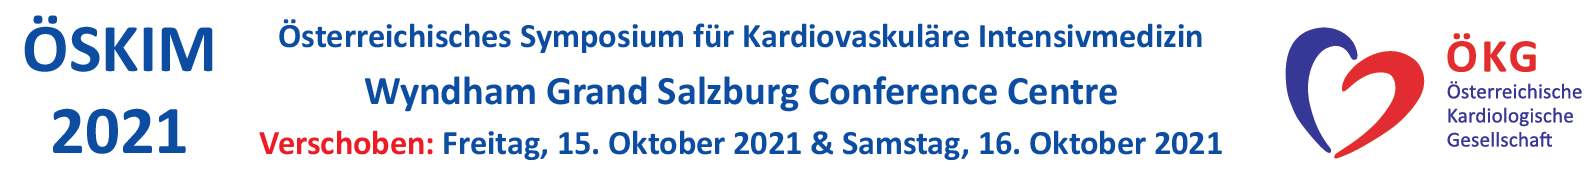 Österreichisches Symposium für Kardiovaskuläre Intensivmedizin 2021